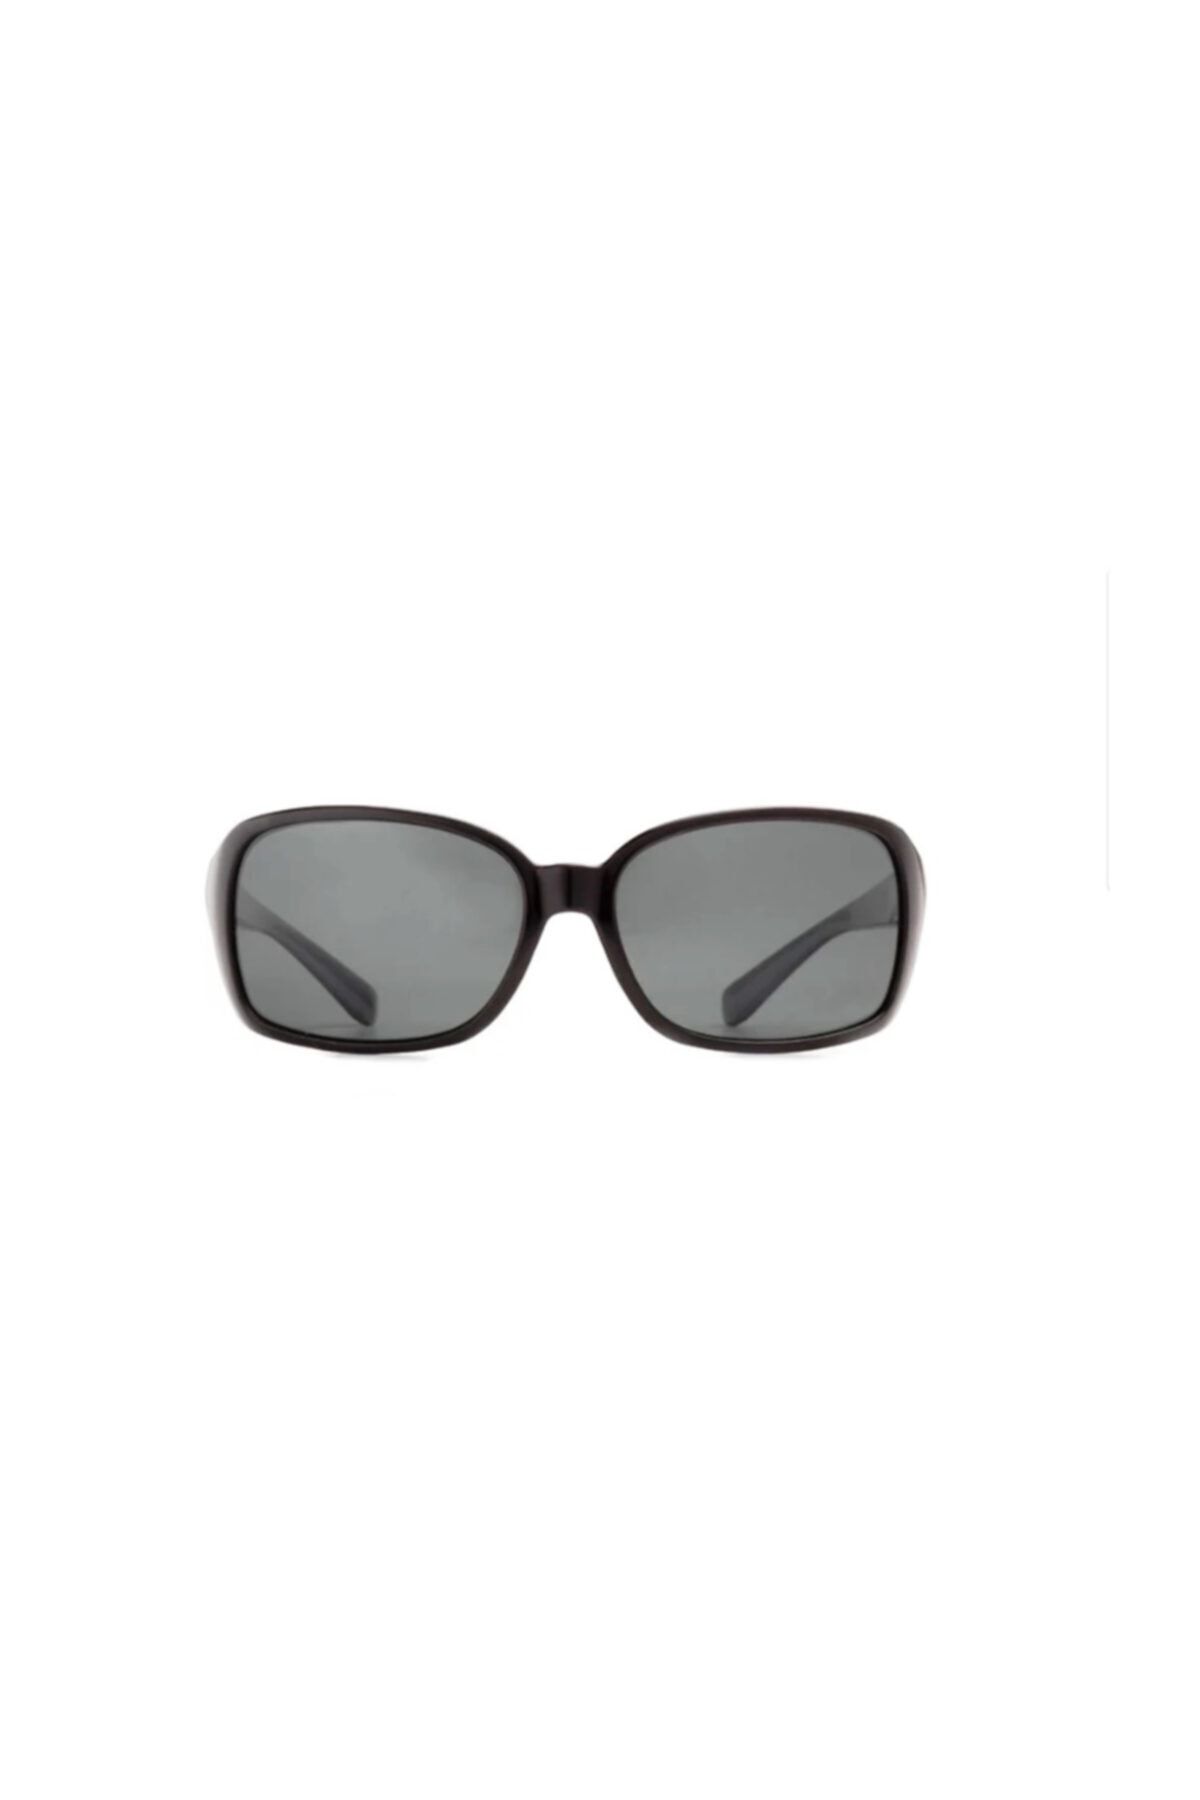 Benx Sunglasses Benix 9200 Polarize Kadın Güneş Gözlüğü